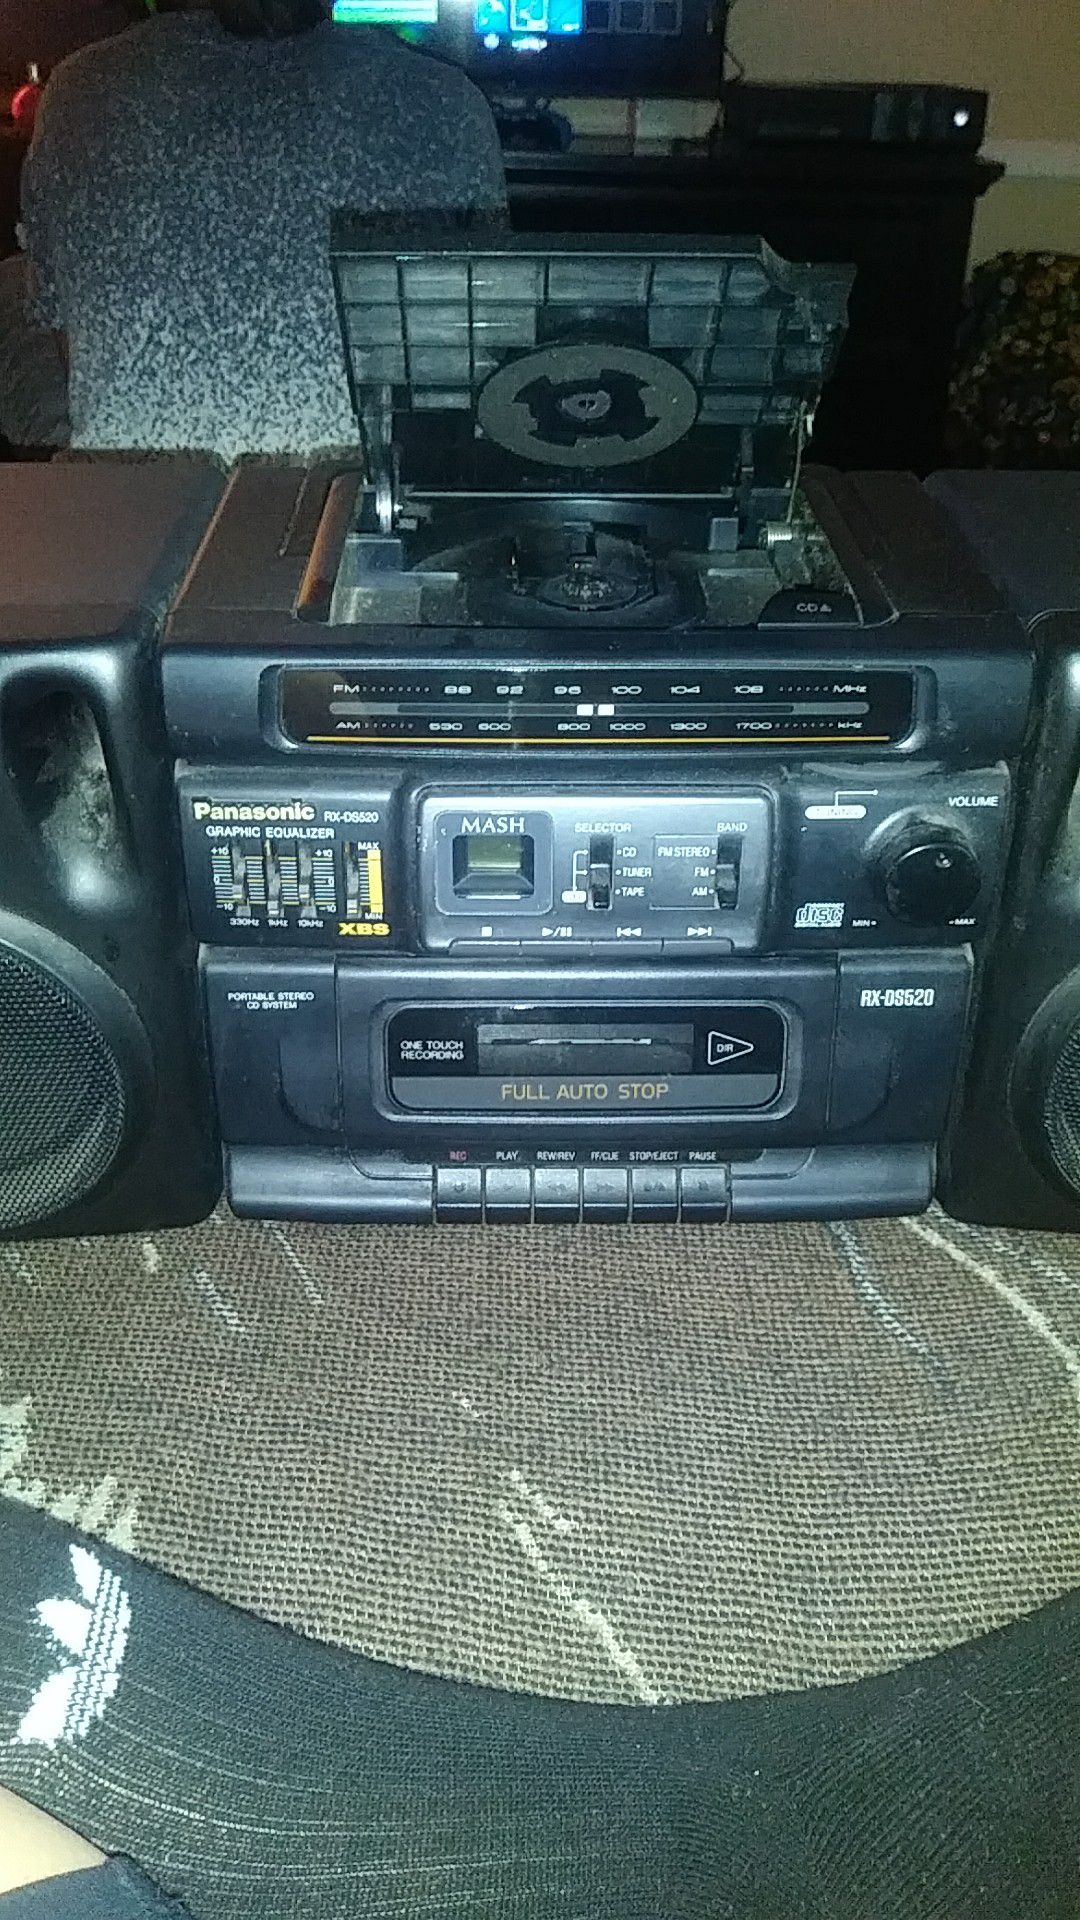 Panasonic radio/stereo